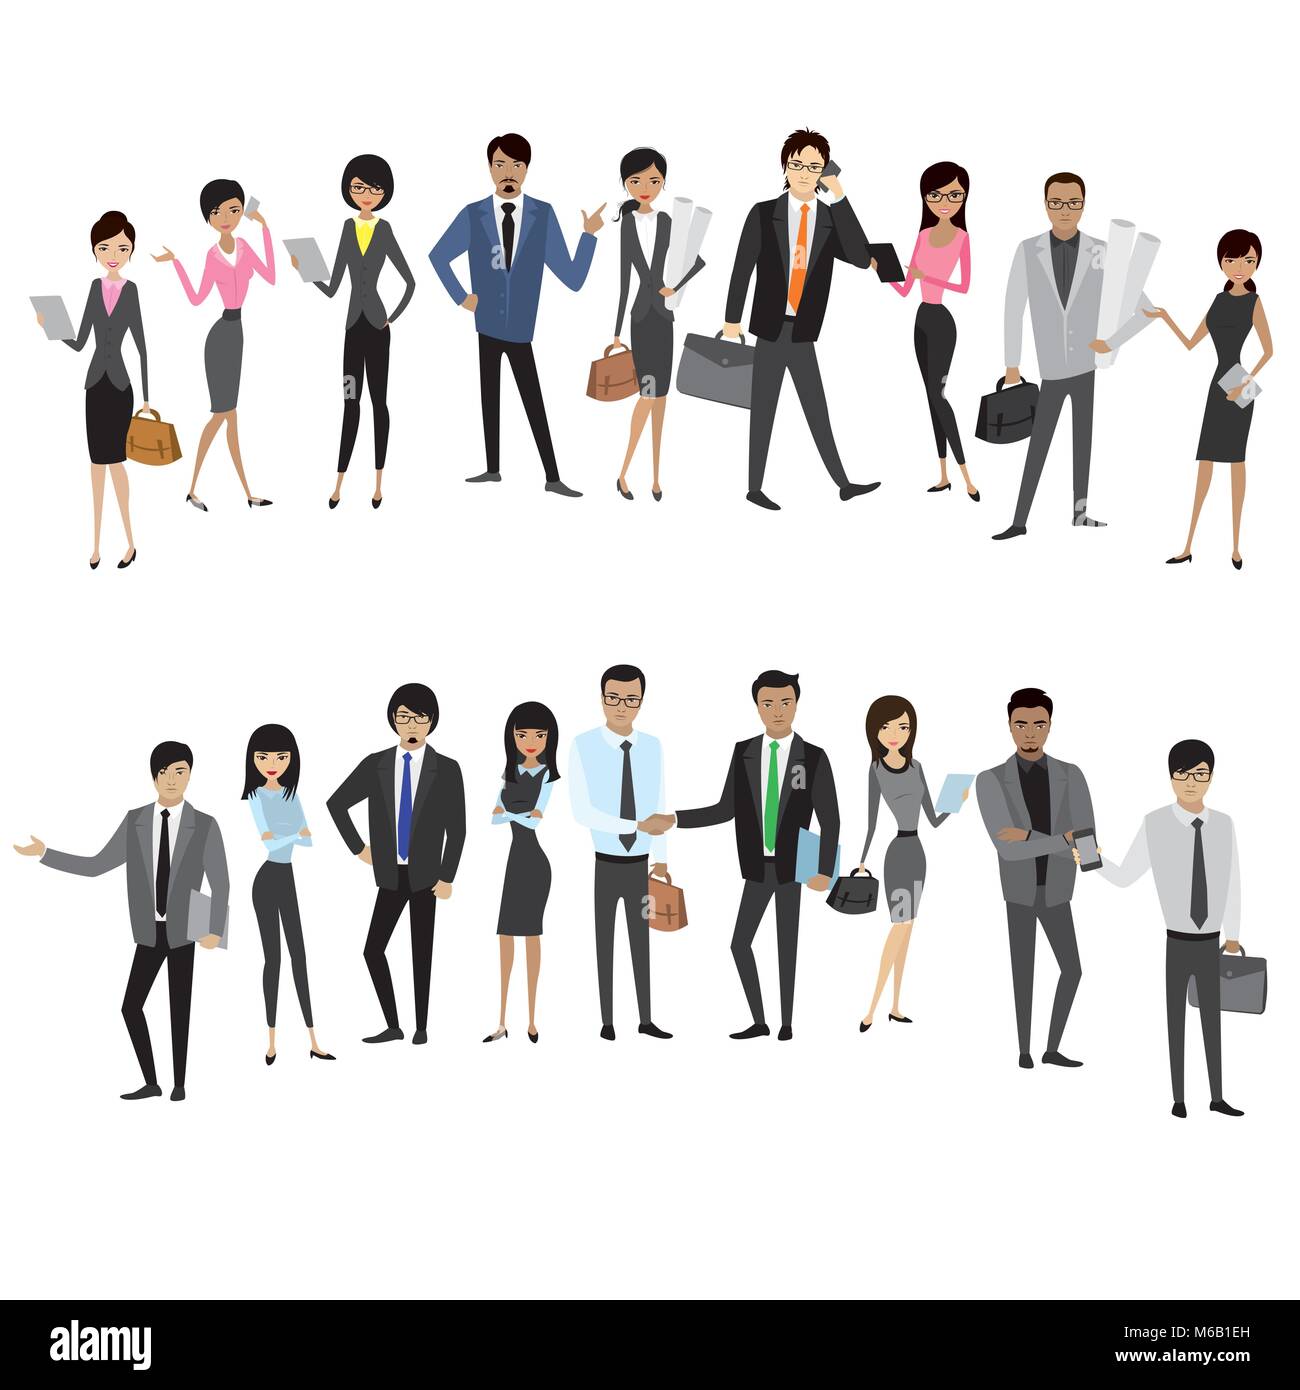 Les hommes d'affaires asiatiques et définir les femmes isolées sur fond blanc, cartoon stock vector illustration Illustration de Vecteur